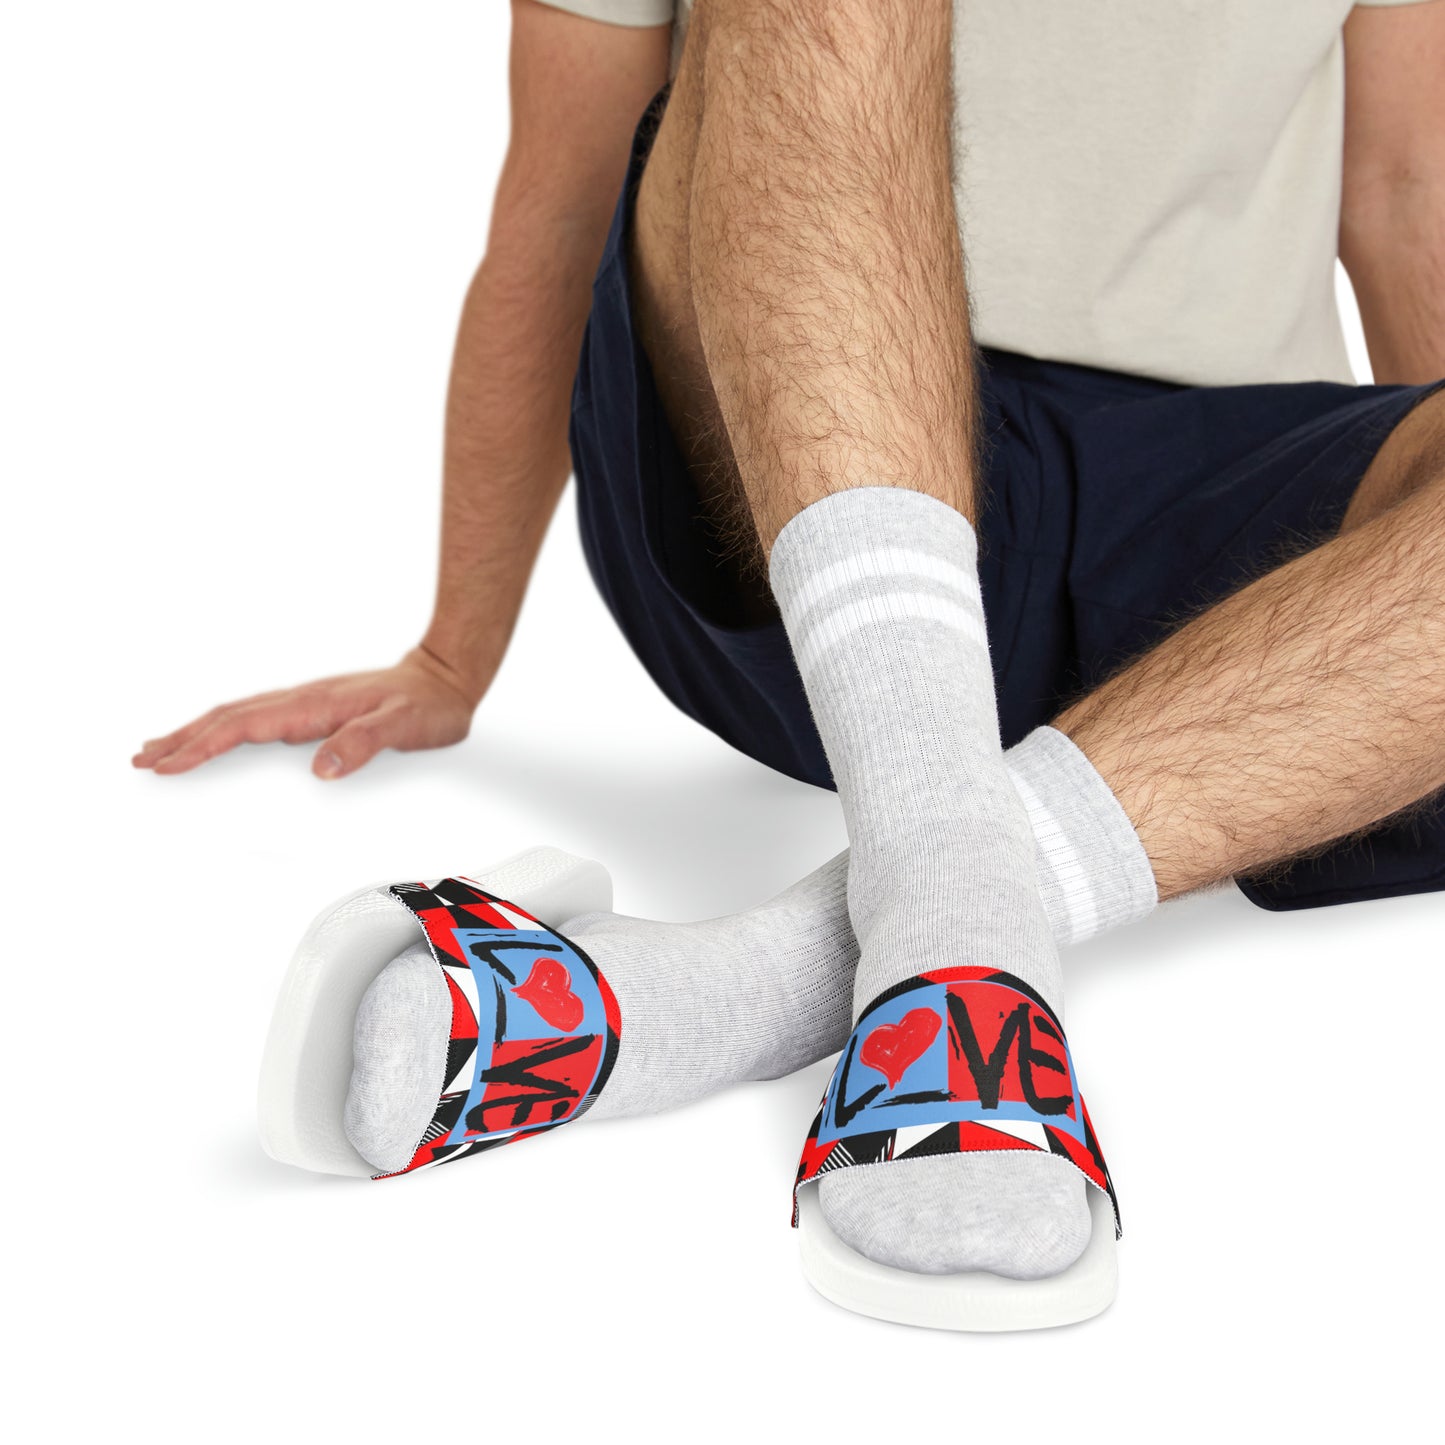 Sean Breed L❤️VE Men's PU Slide Sandals